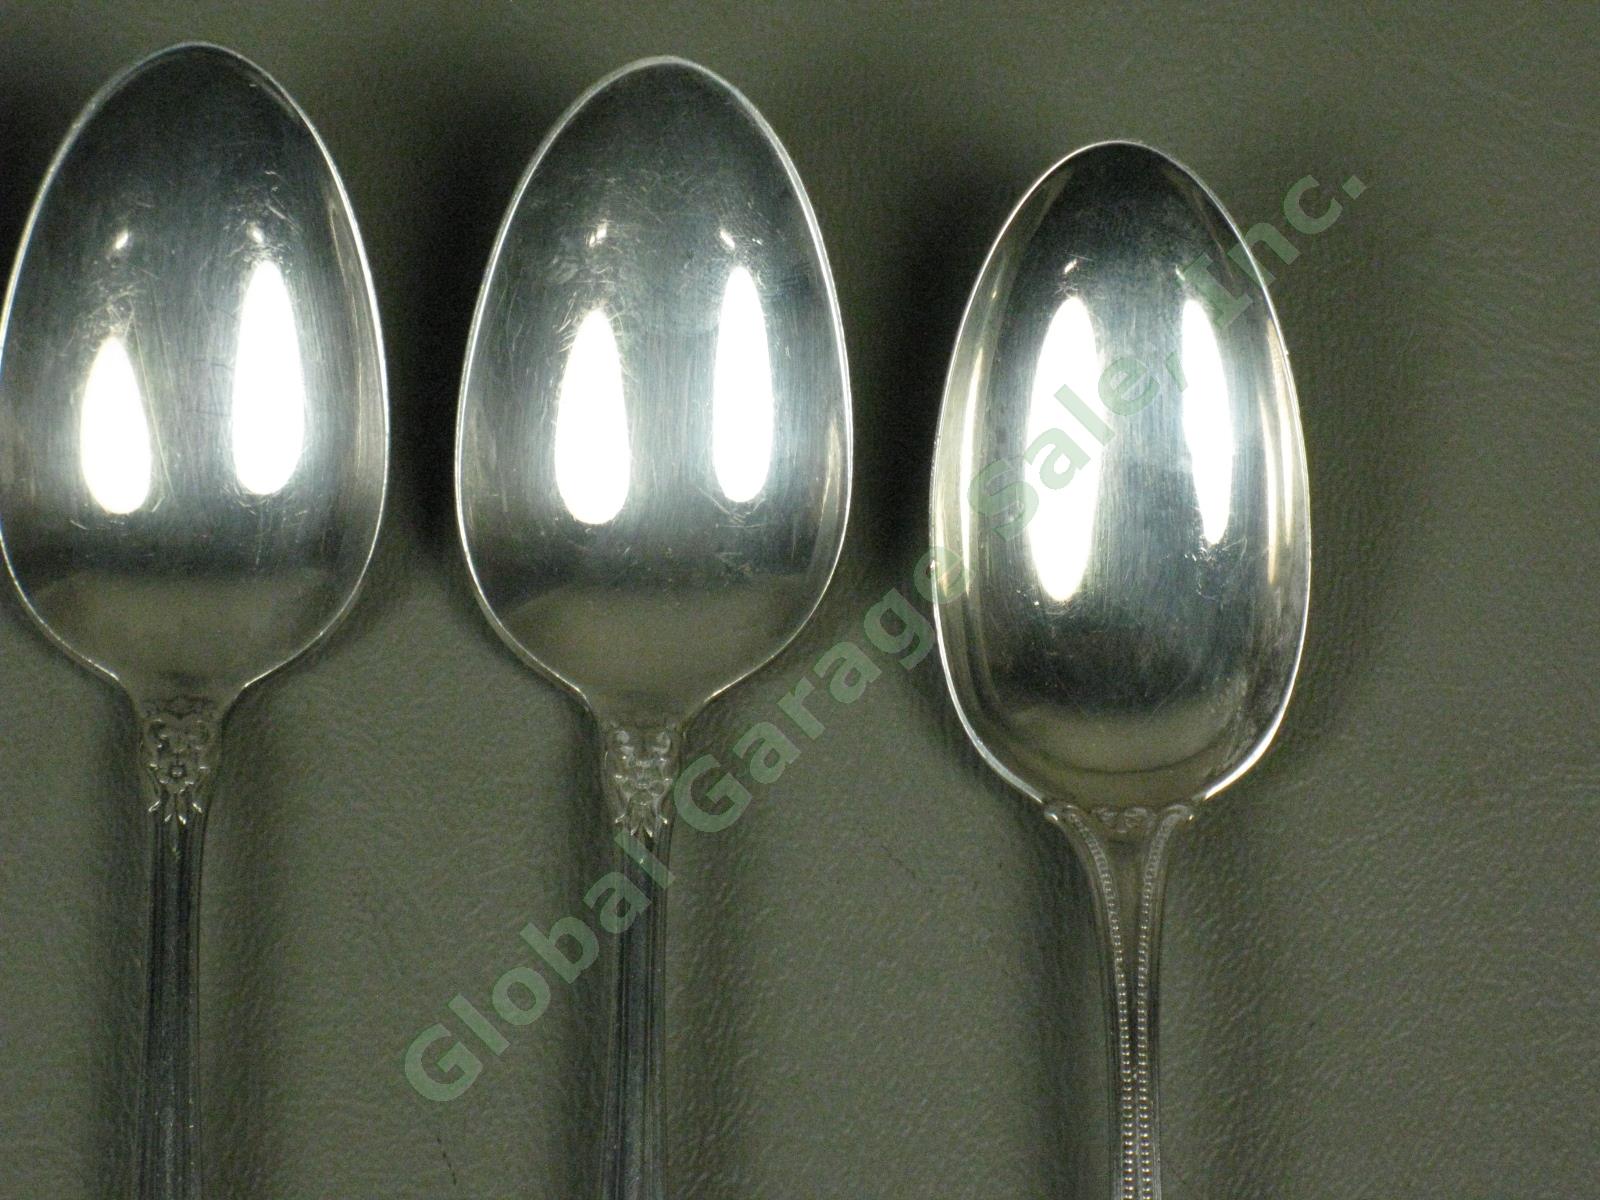 7 State House Inaugural Sterling Silver Teaspoons Spoons Silverware Set 232 Gram 3